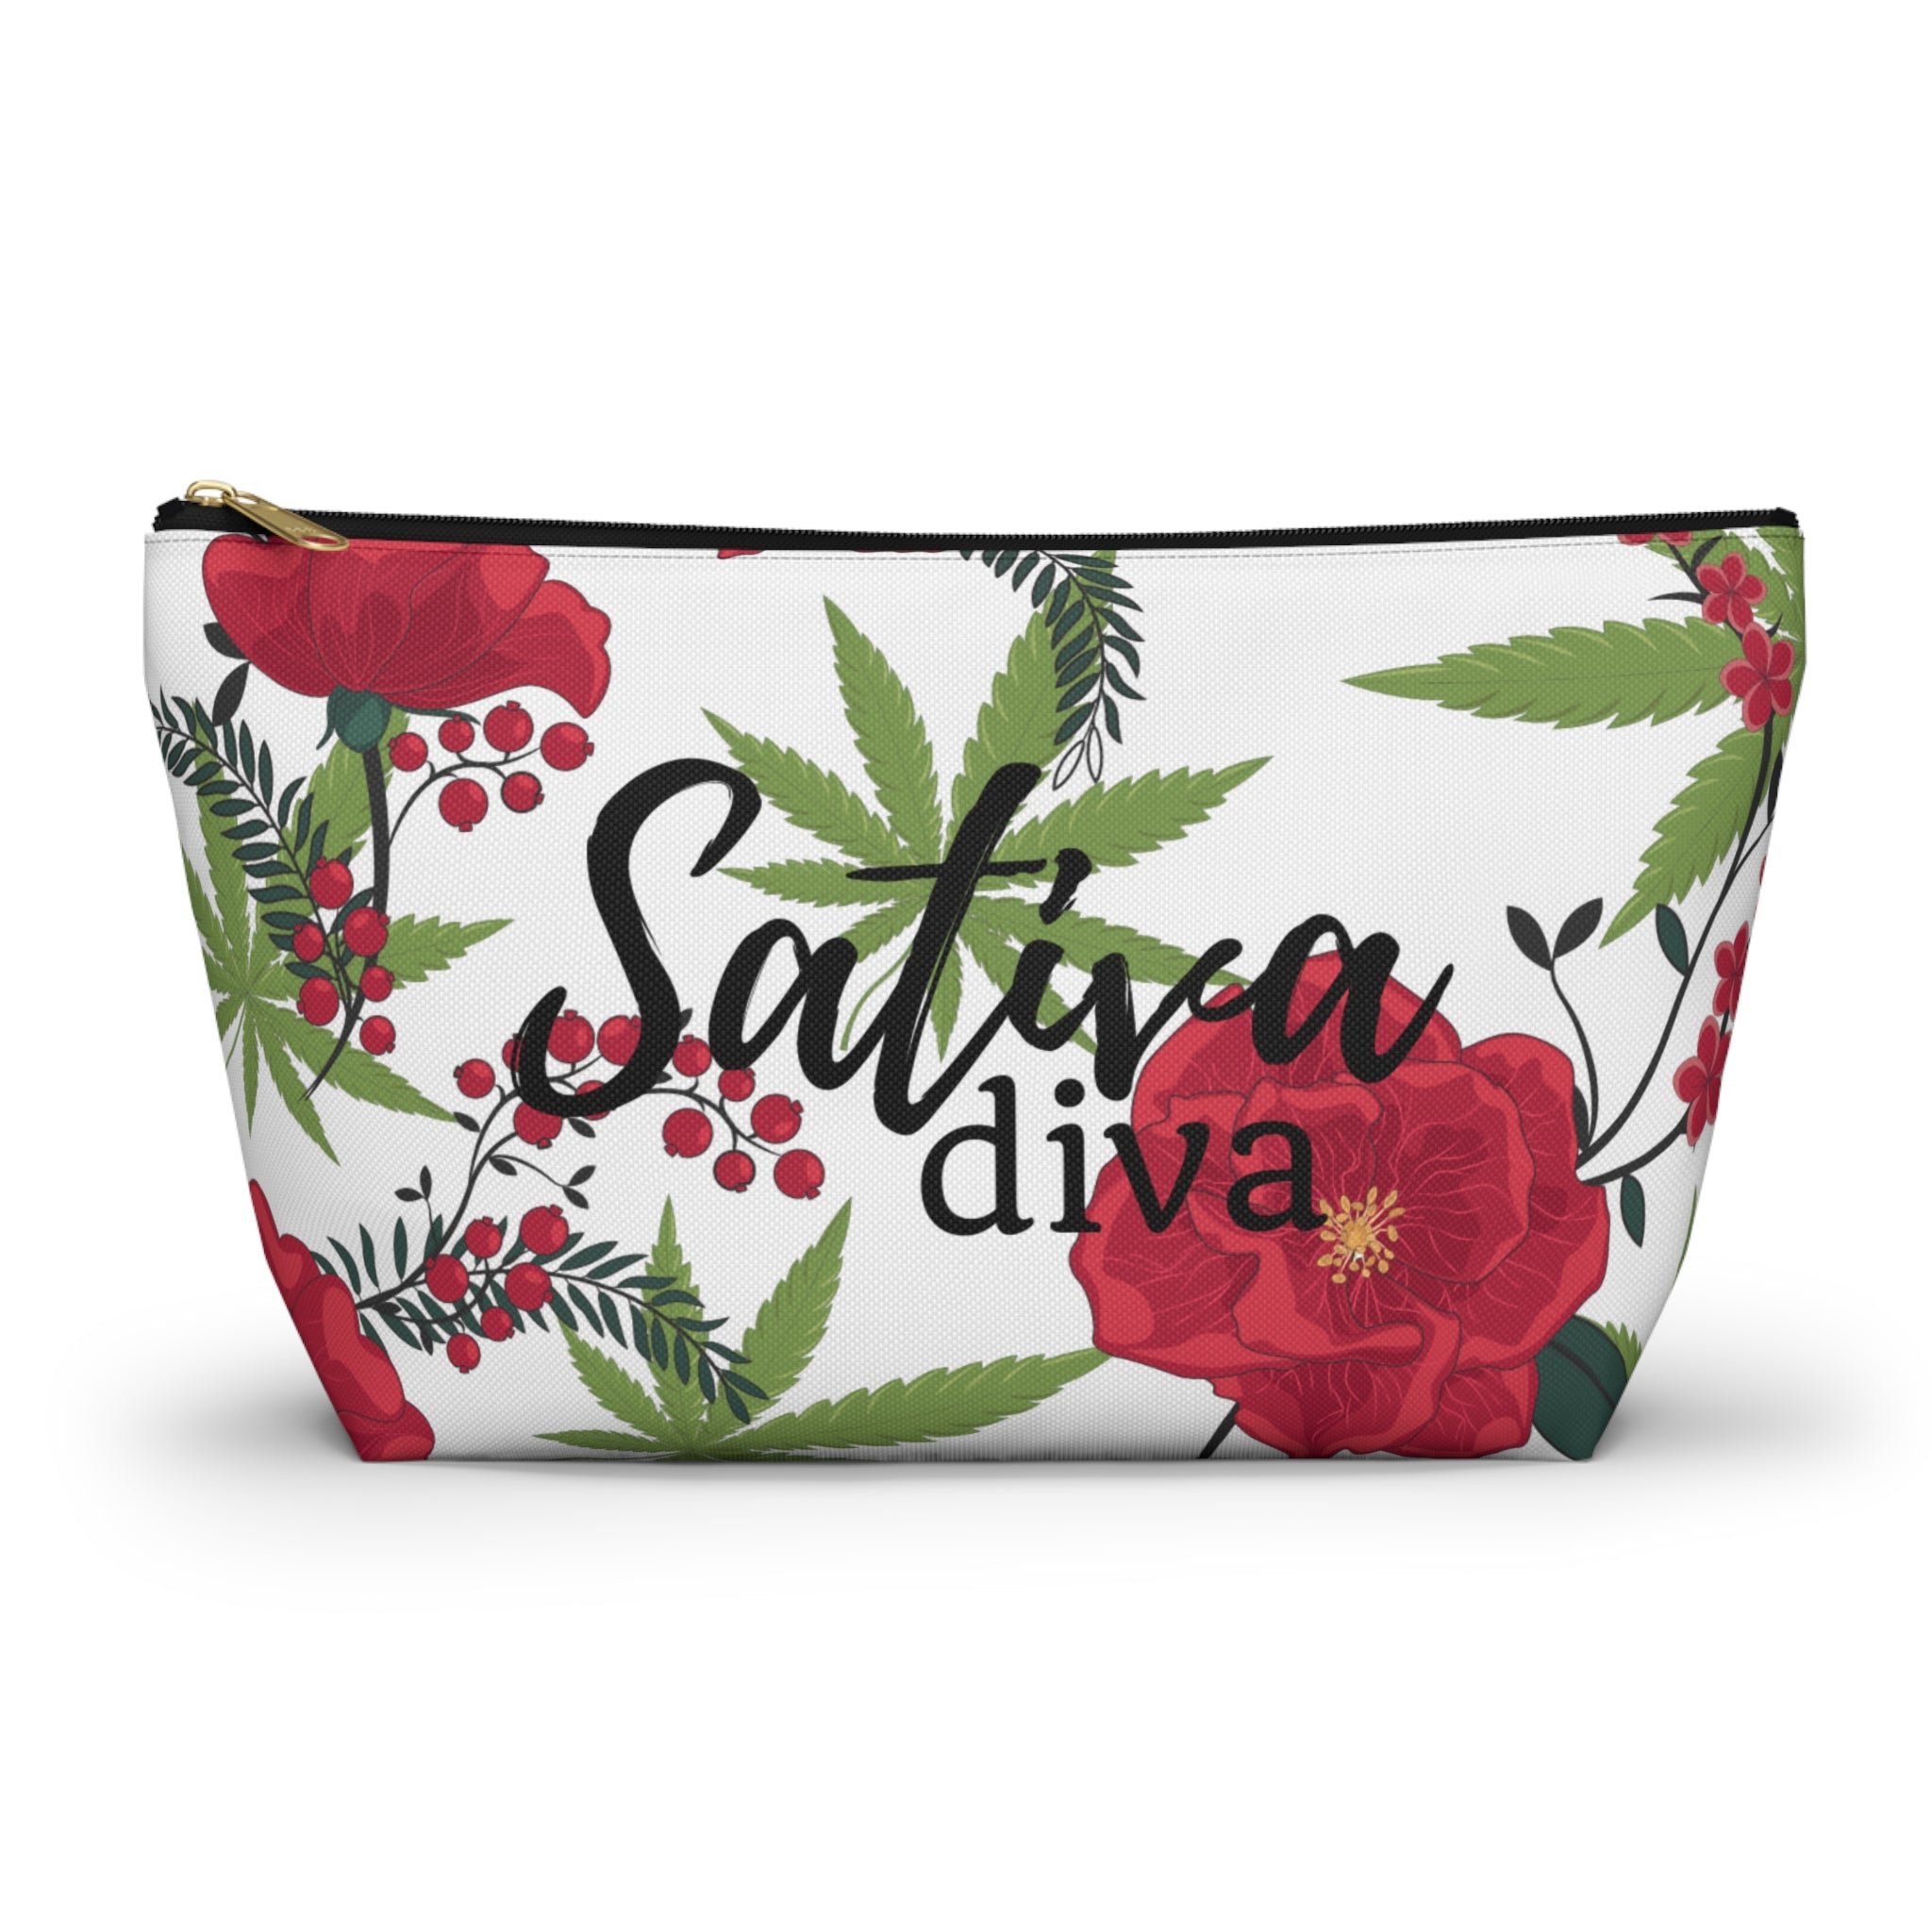 Sativa Diva Cannabis Leaf Stash Bag  Accessory Bag Travel Bag Makeup Bag Stoner Gift